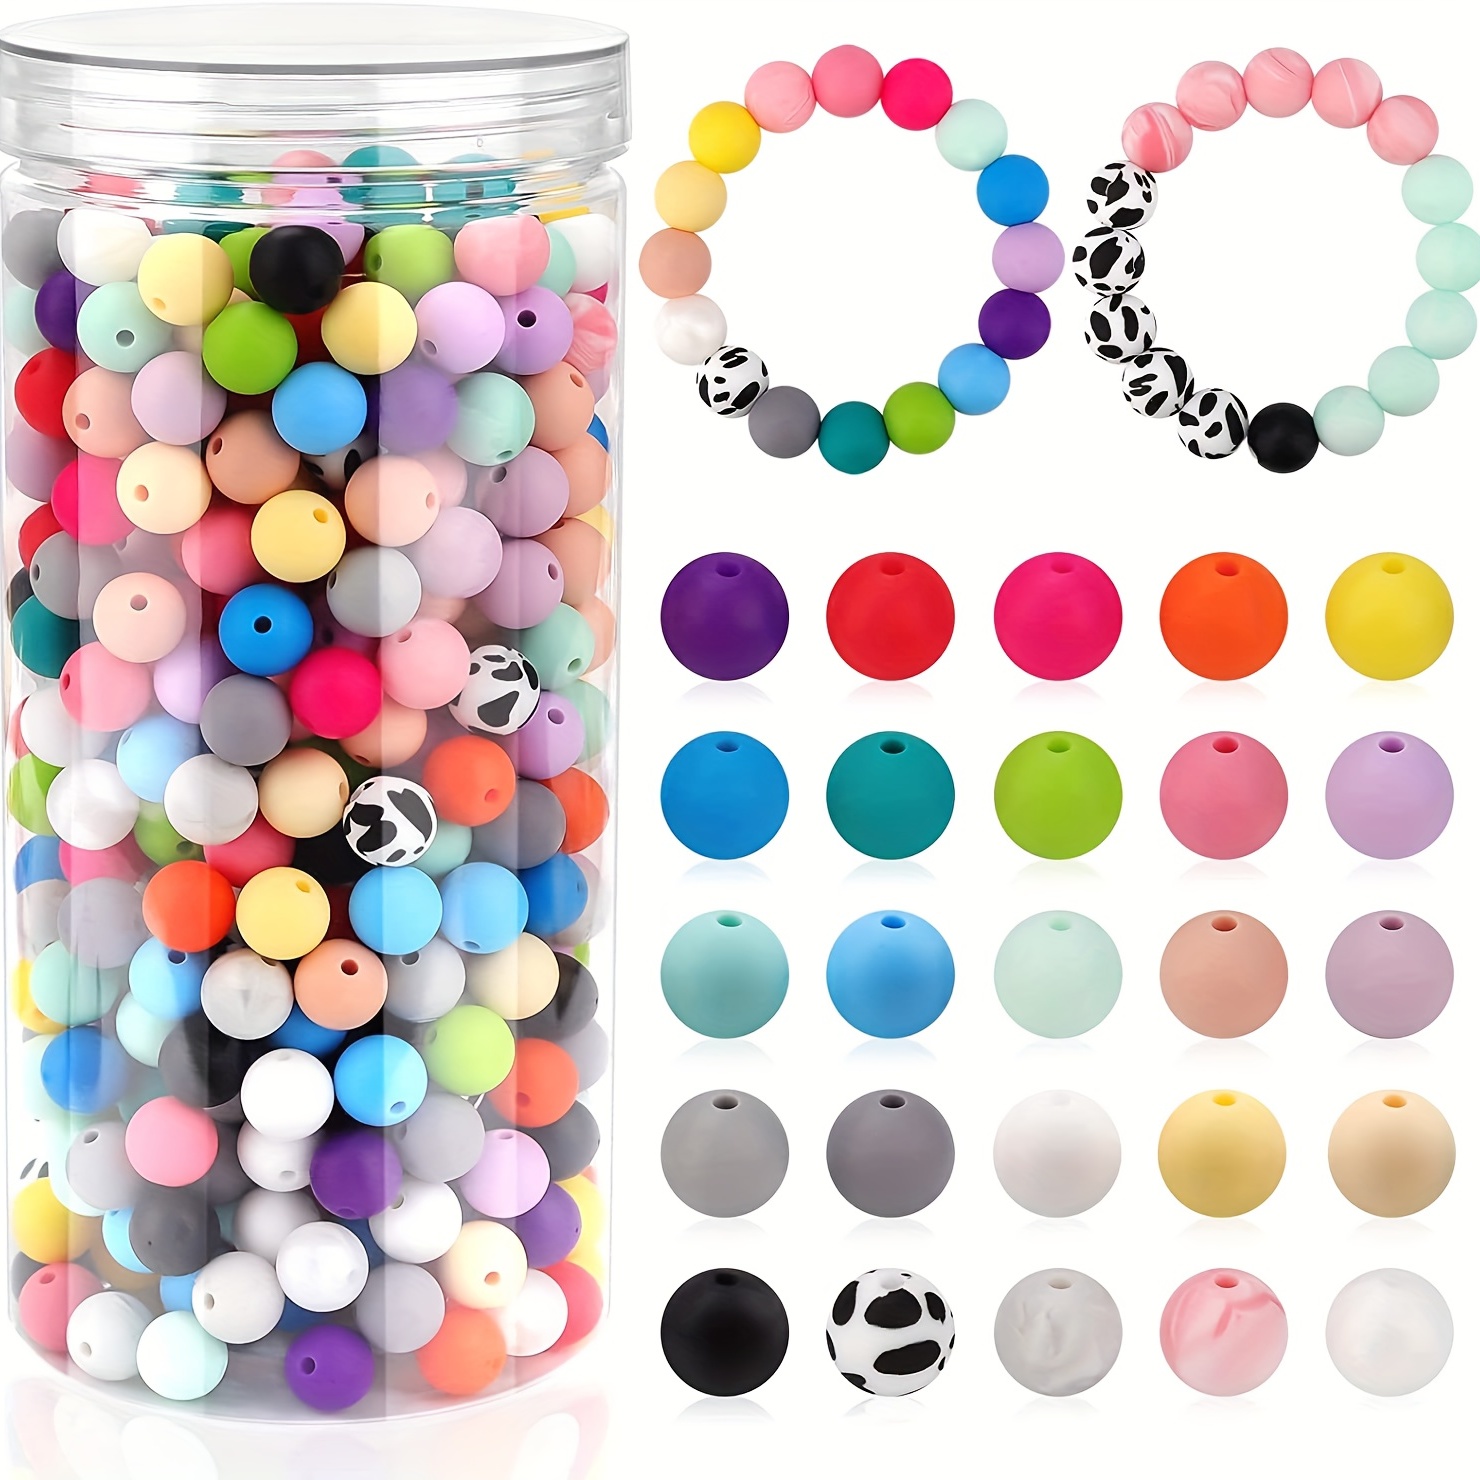 

500 pièces de perles rondes en Silicone colorées de 12mm, ensemble de perles circulaires en caoutchouc, à la mode pour boîte d'accessoires, fournitures artisanales de perles faites à la main